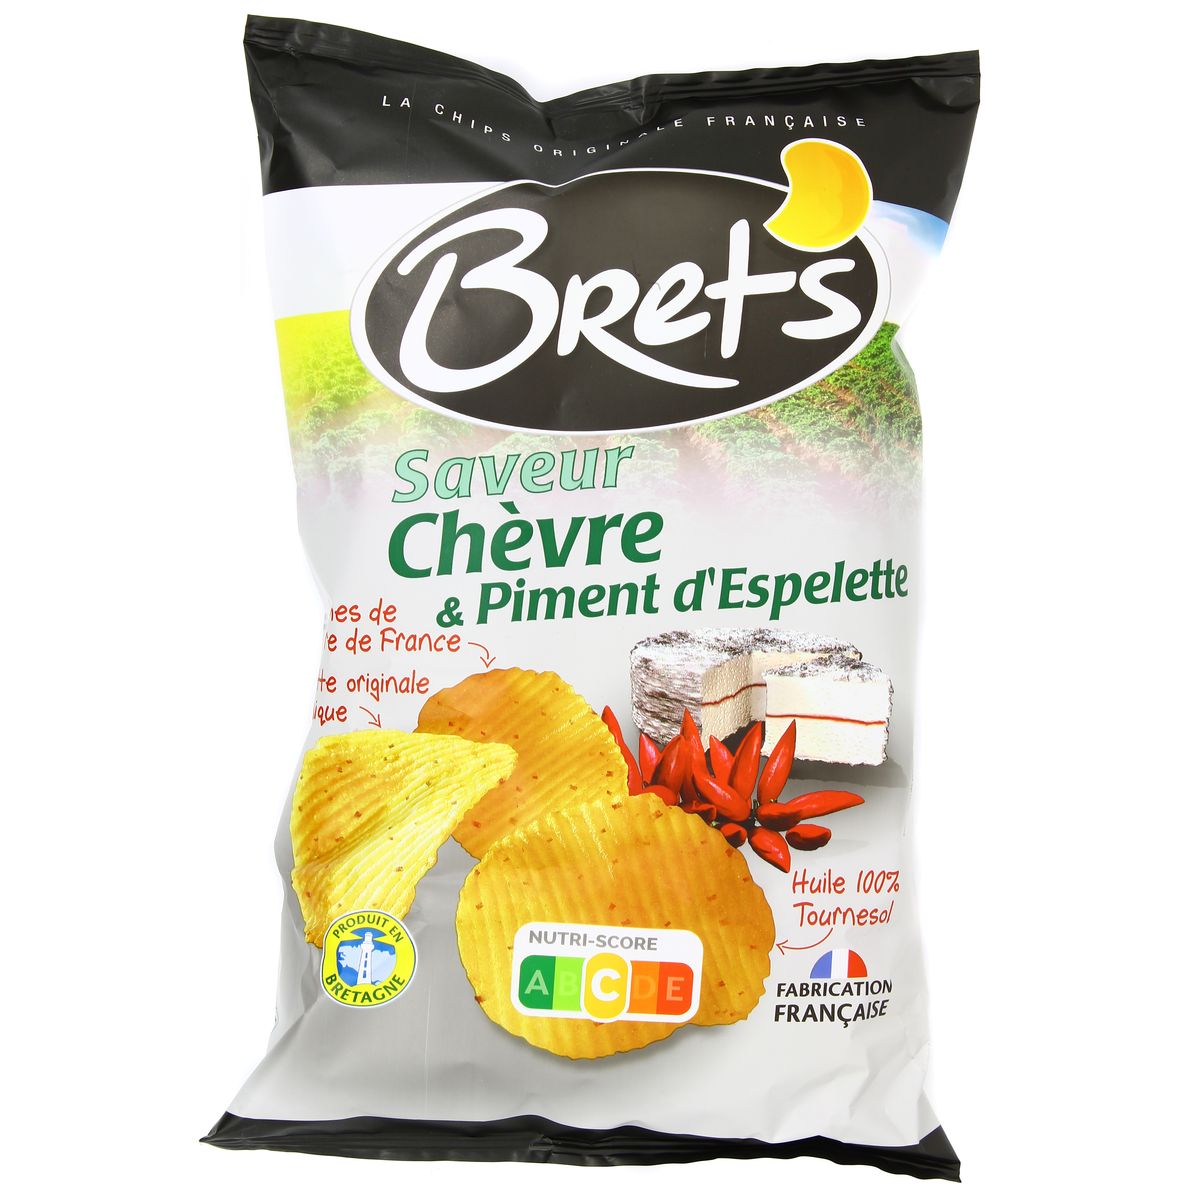 La chips de légumes - Bret's